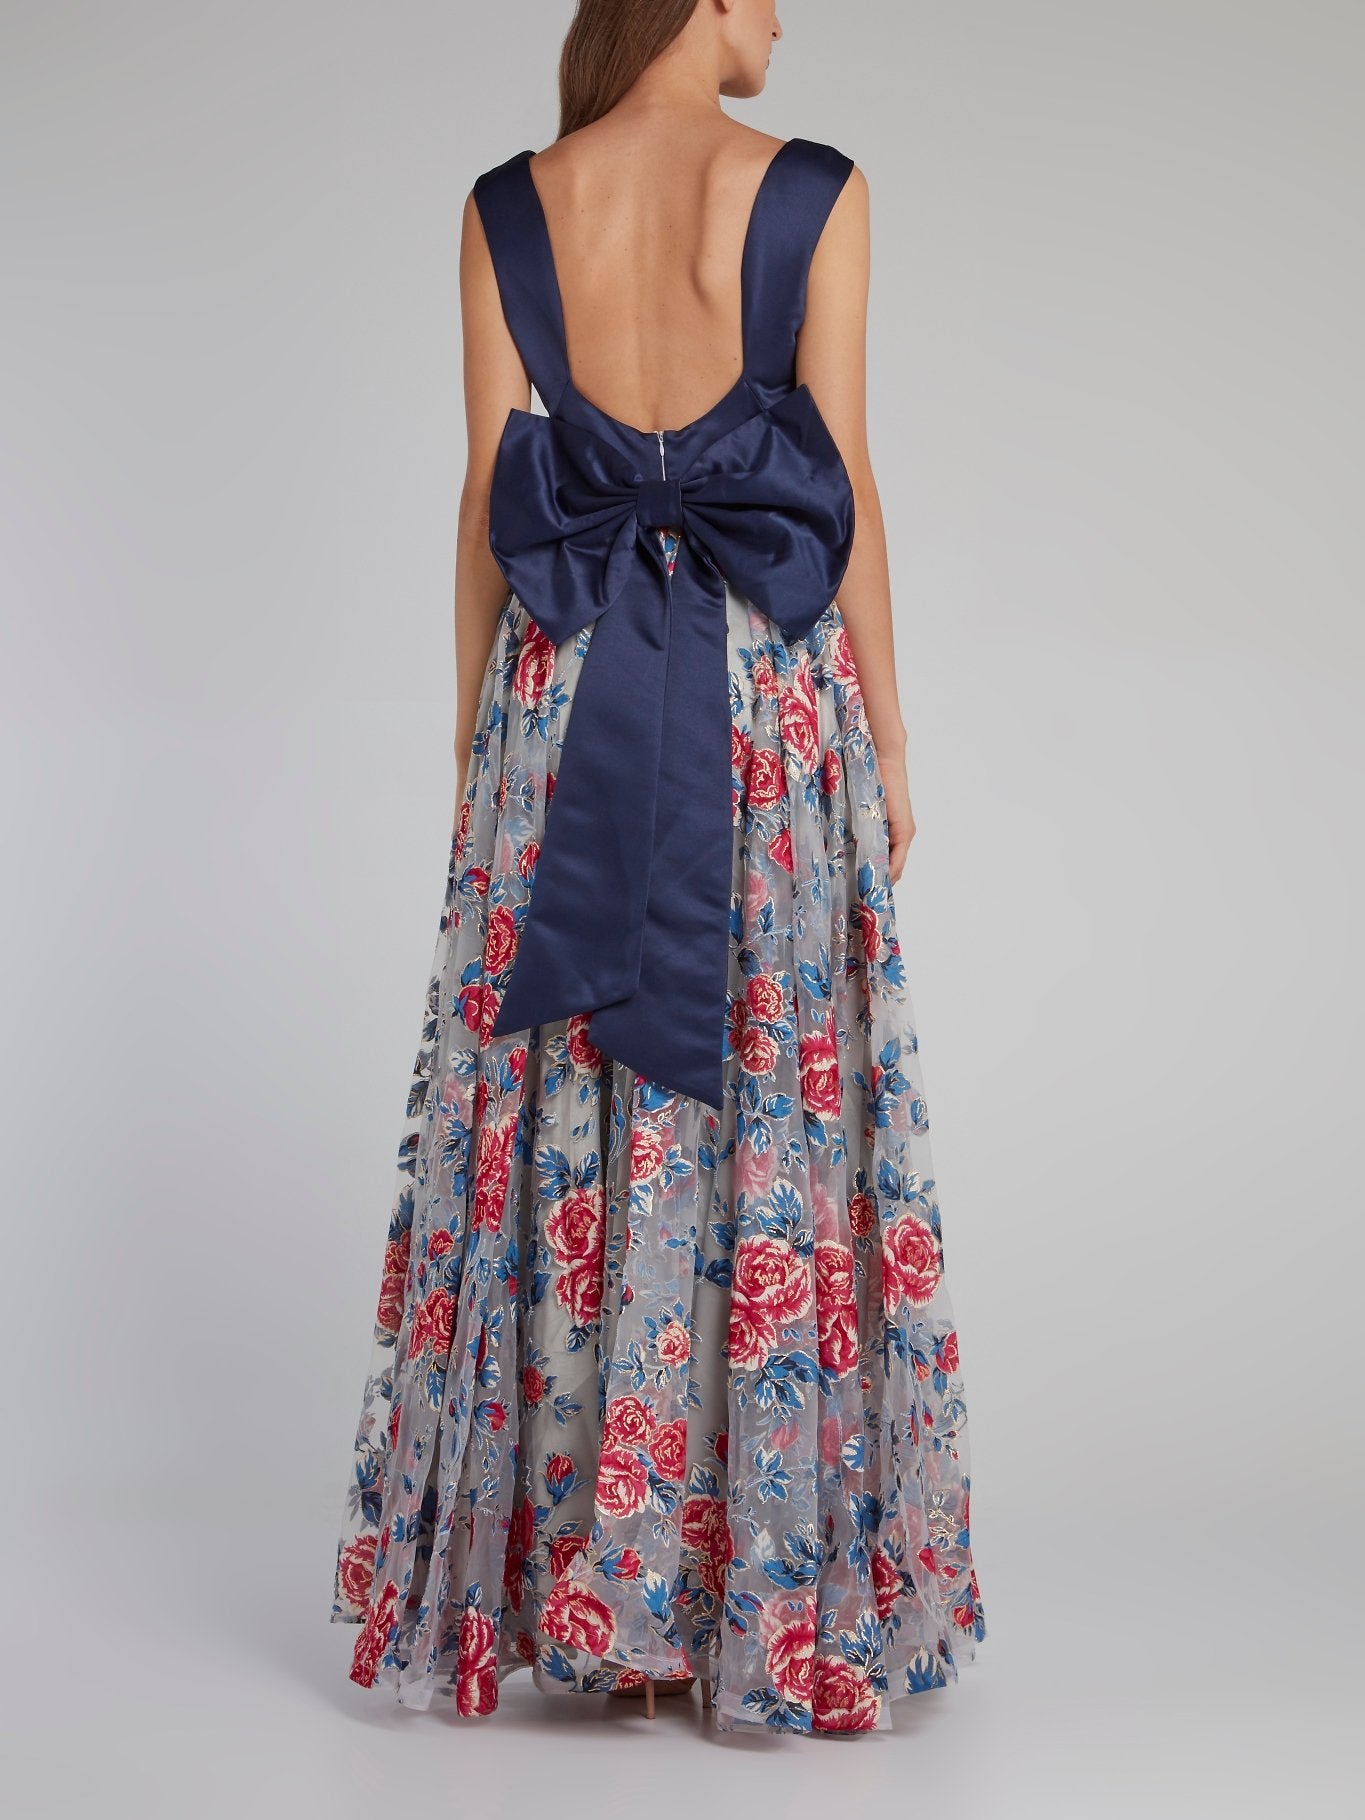 Платье с темно-синим лифом, бантом и цветочным принтом